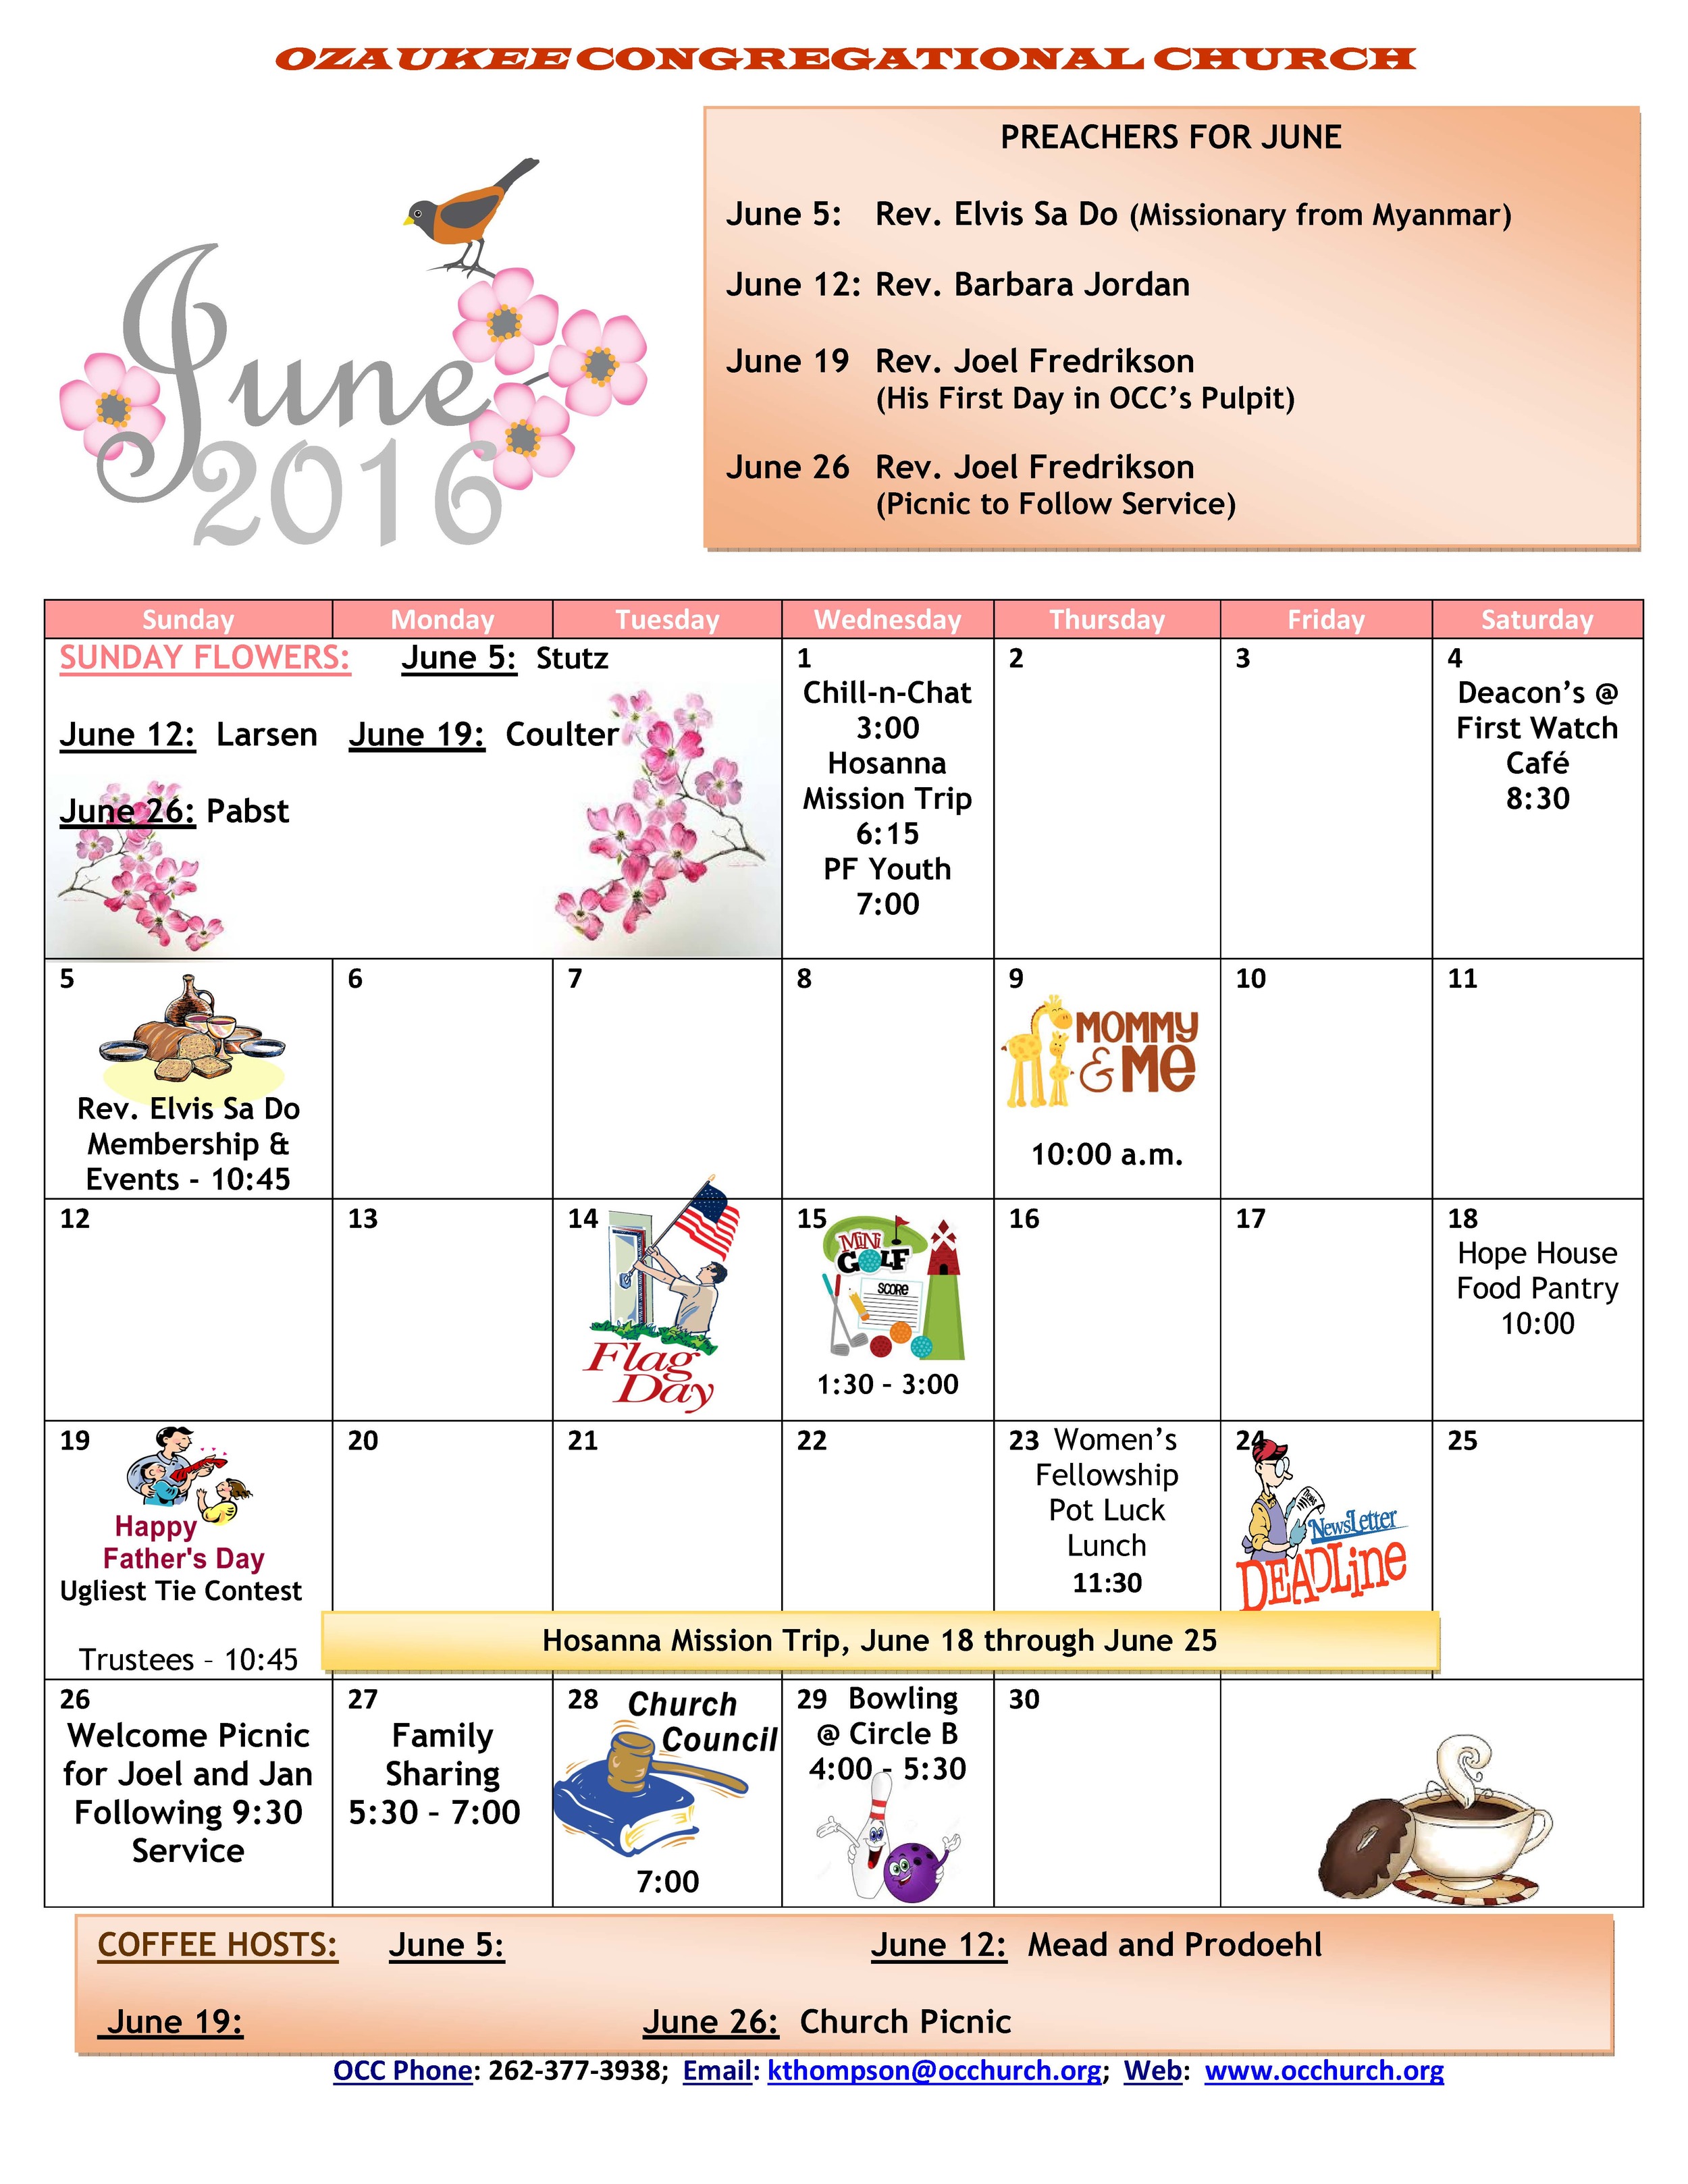 June Newsletter Calendar Ozaukee Congregational Church